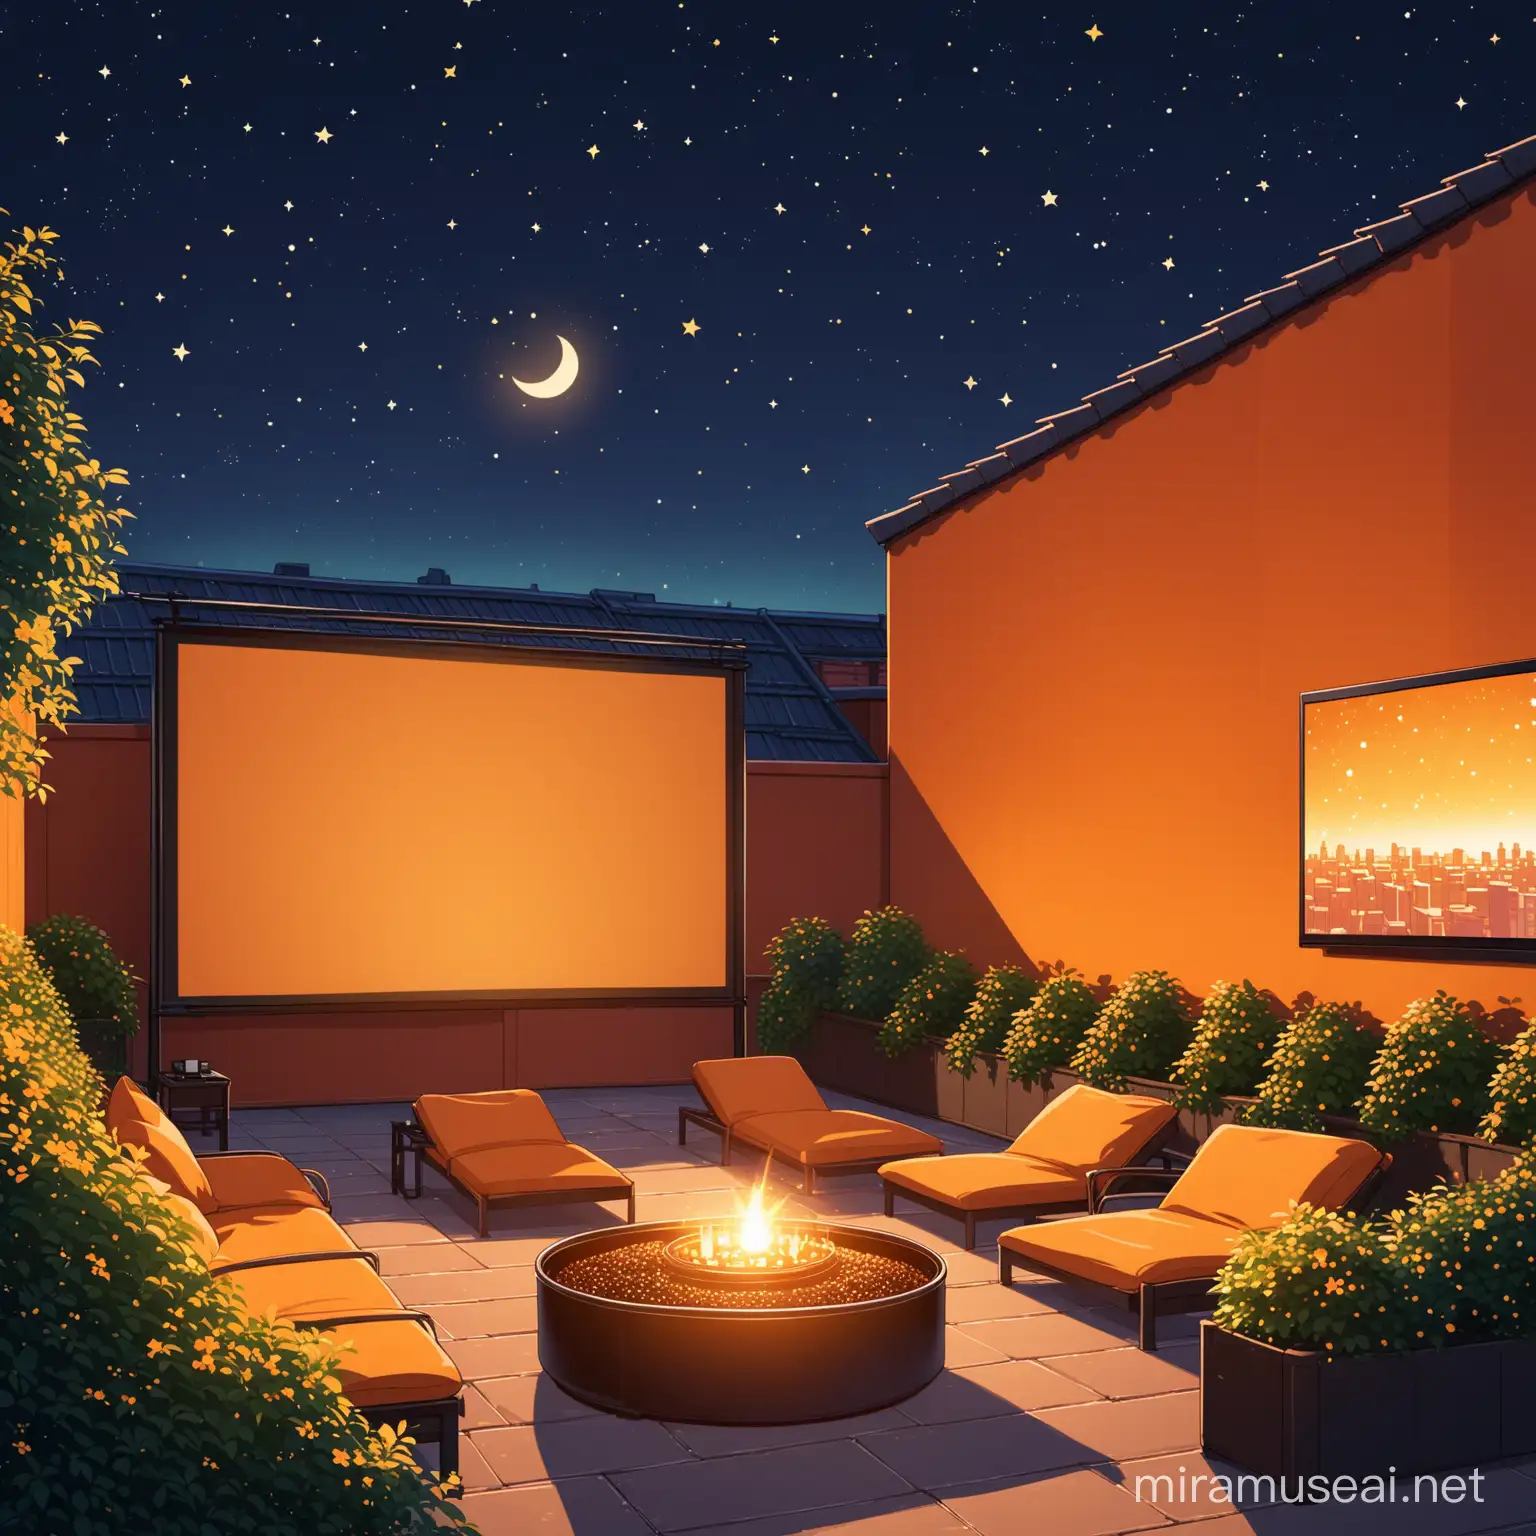 Rooftop Garden Movie Night Under the Stars with Orange Sky Background